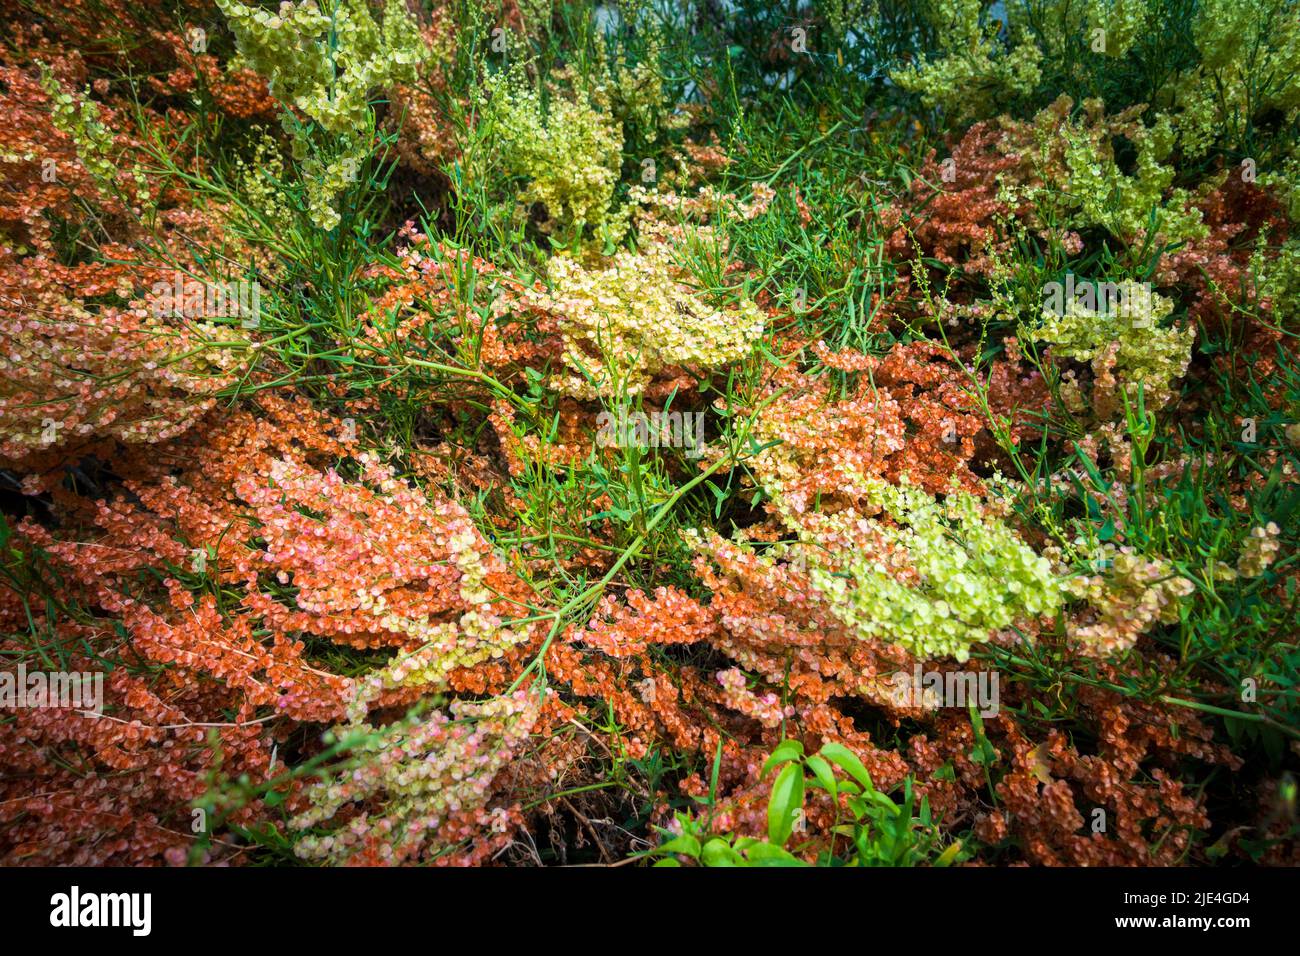 Bella multicolore Selvatica hydrangea fioritura, di solito trovato nella foresta mesica, spesso lungo i ruscelli o in aree rocciose, ma cresce anche in aree più secche. Foto Stock